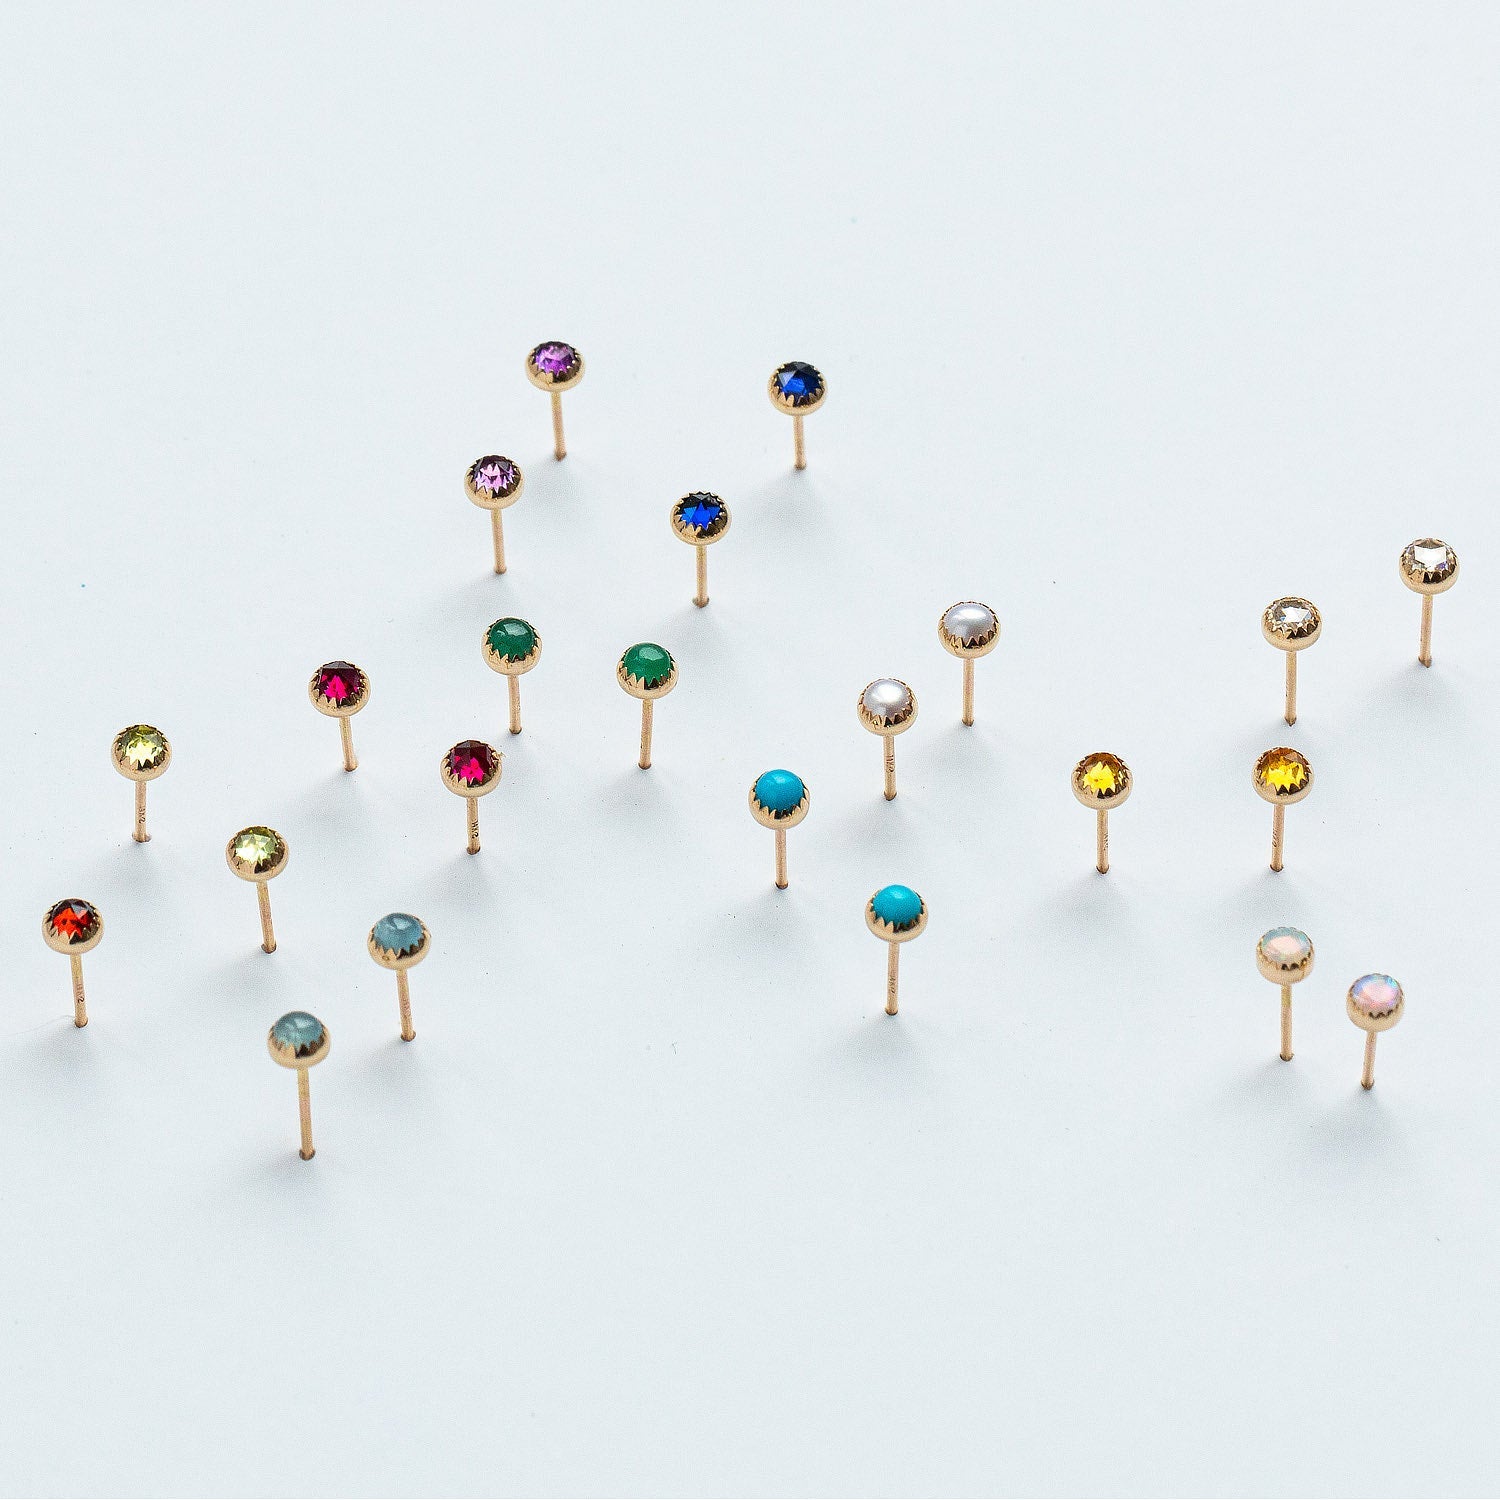 Garnet & gold stud earrings - Simone Walsh Jewellery Australia